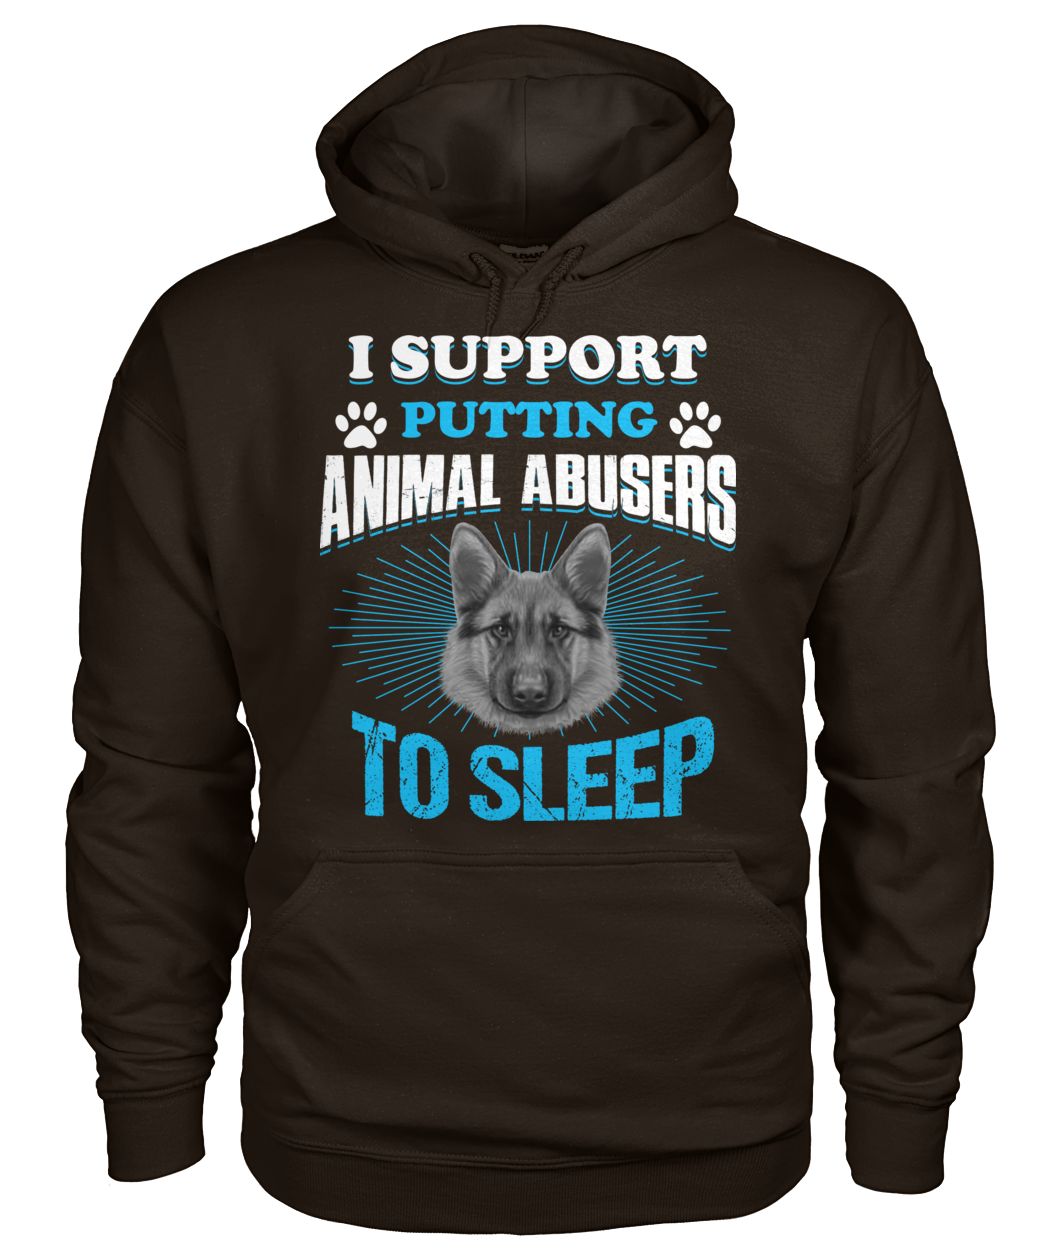 German shepherd I support putting animal abusers to sleep gildan hoodie